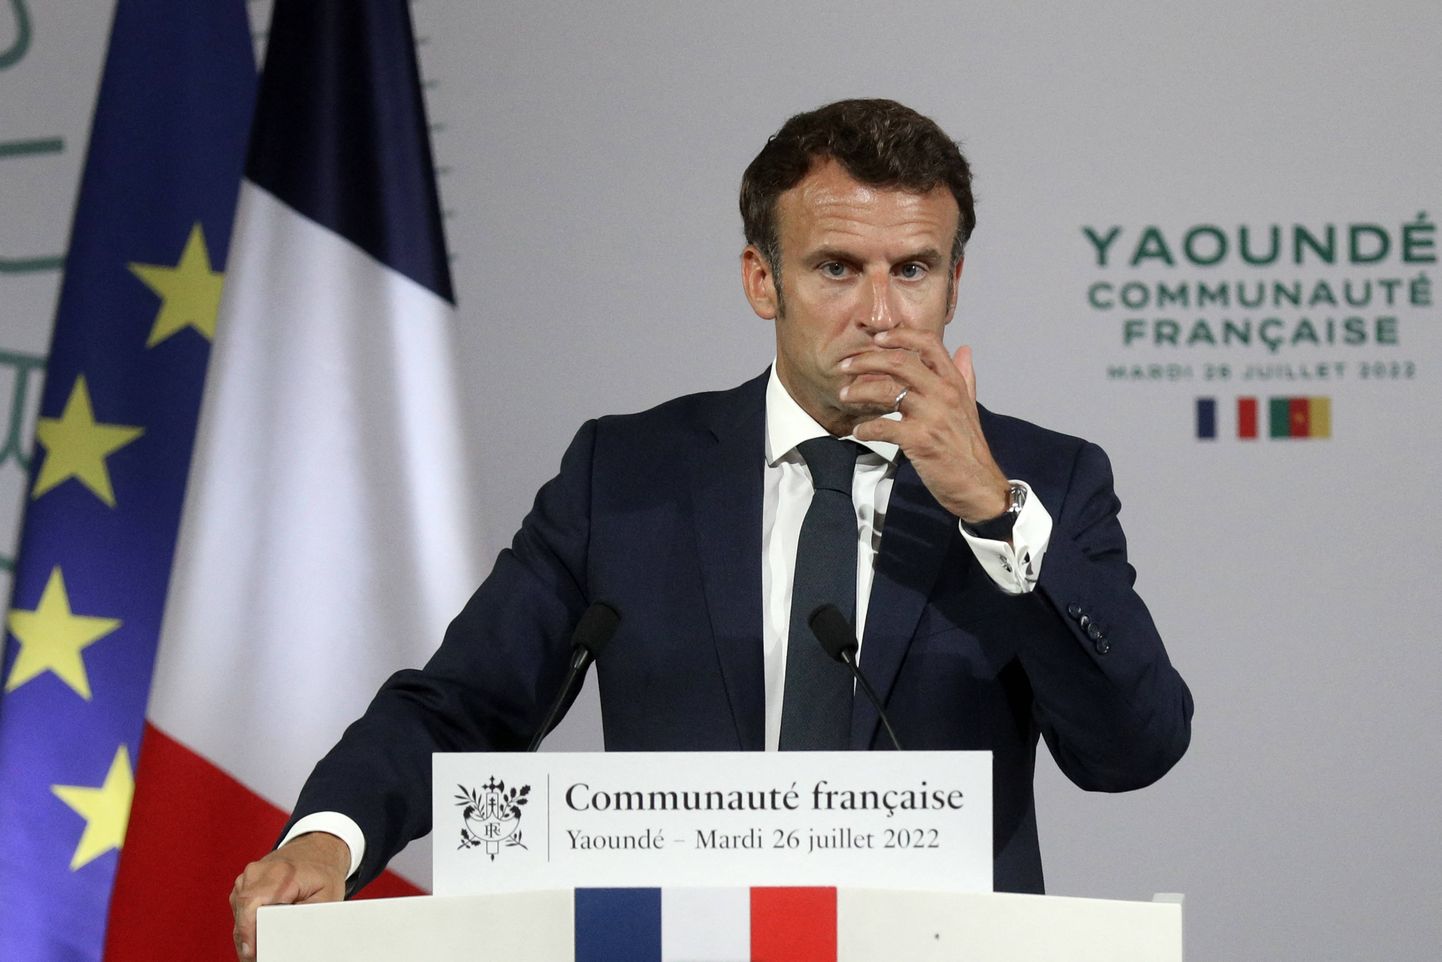 Prantsuse president Emmanuel Macron pidamas kõne kohalikule prantsuse kogukonnale Yaoundes Kamerunis.